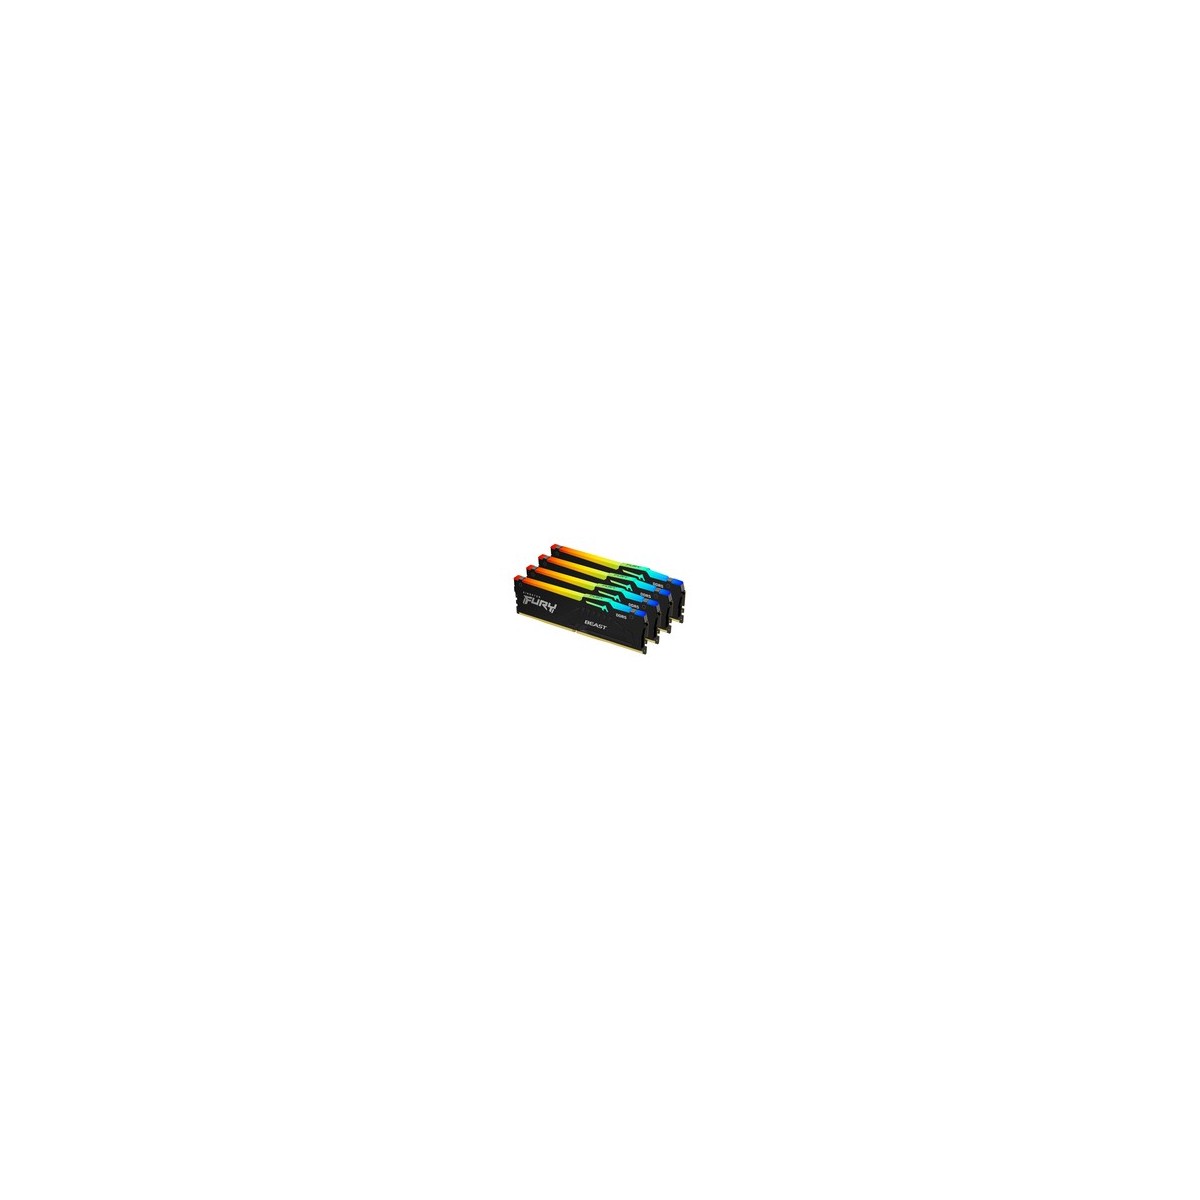 Kingston FURY Beast RGB - 64 GB - 4 x 16 GB - DDR5 - 5600 MHz - 288-pin DIMM